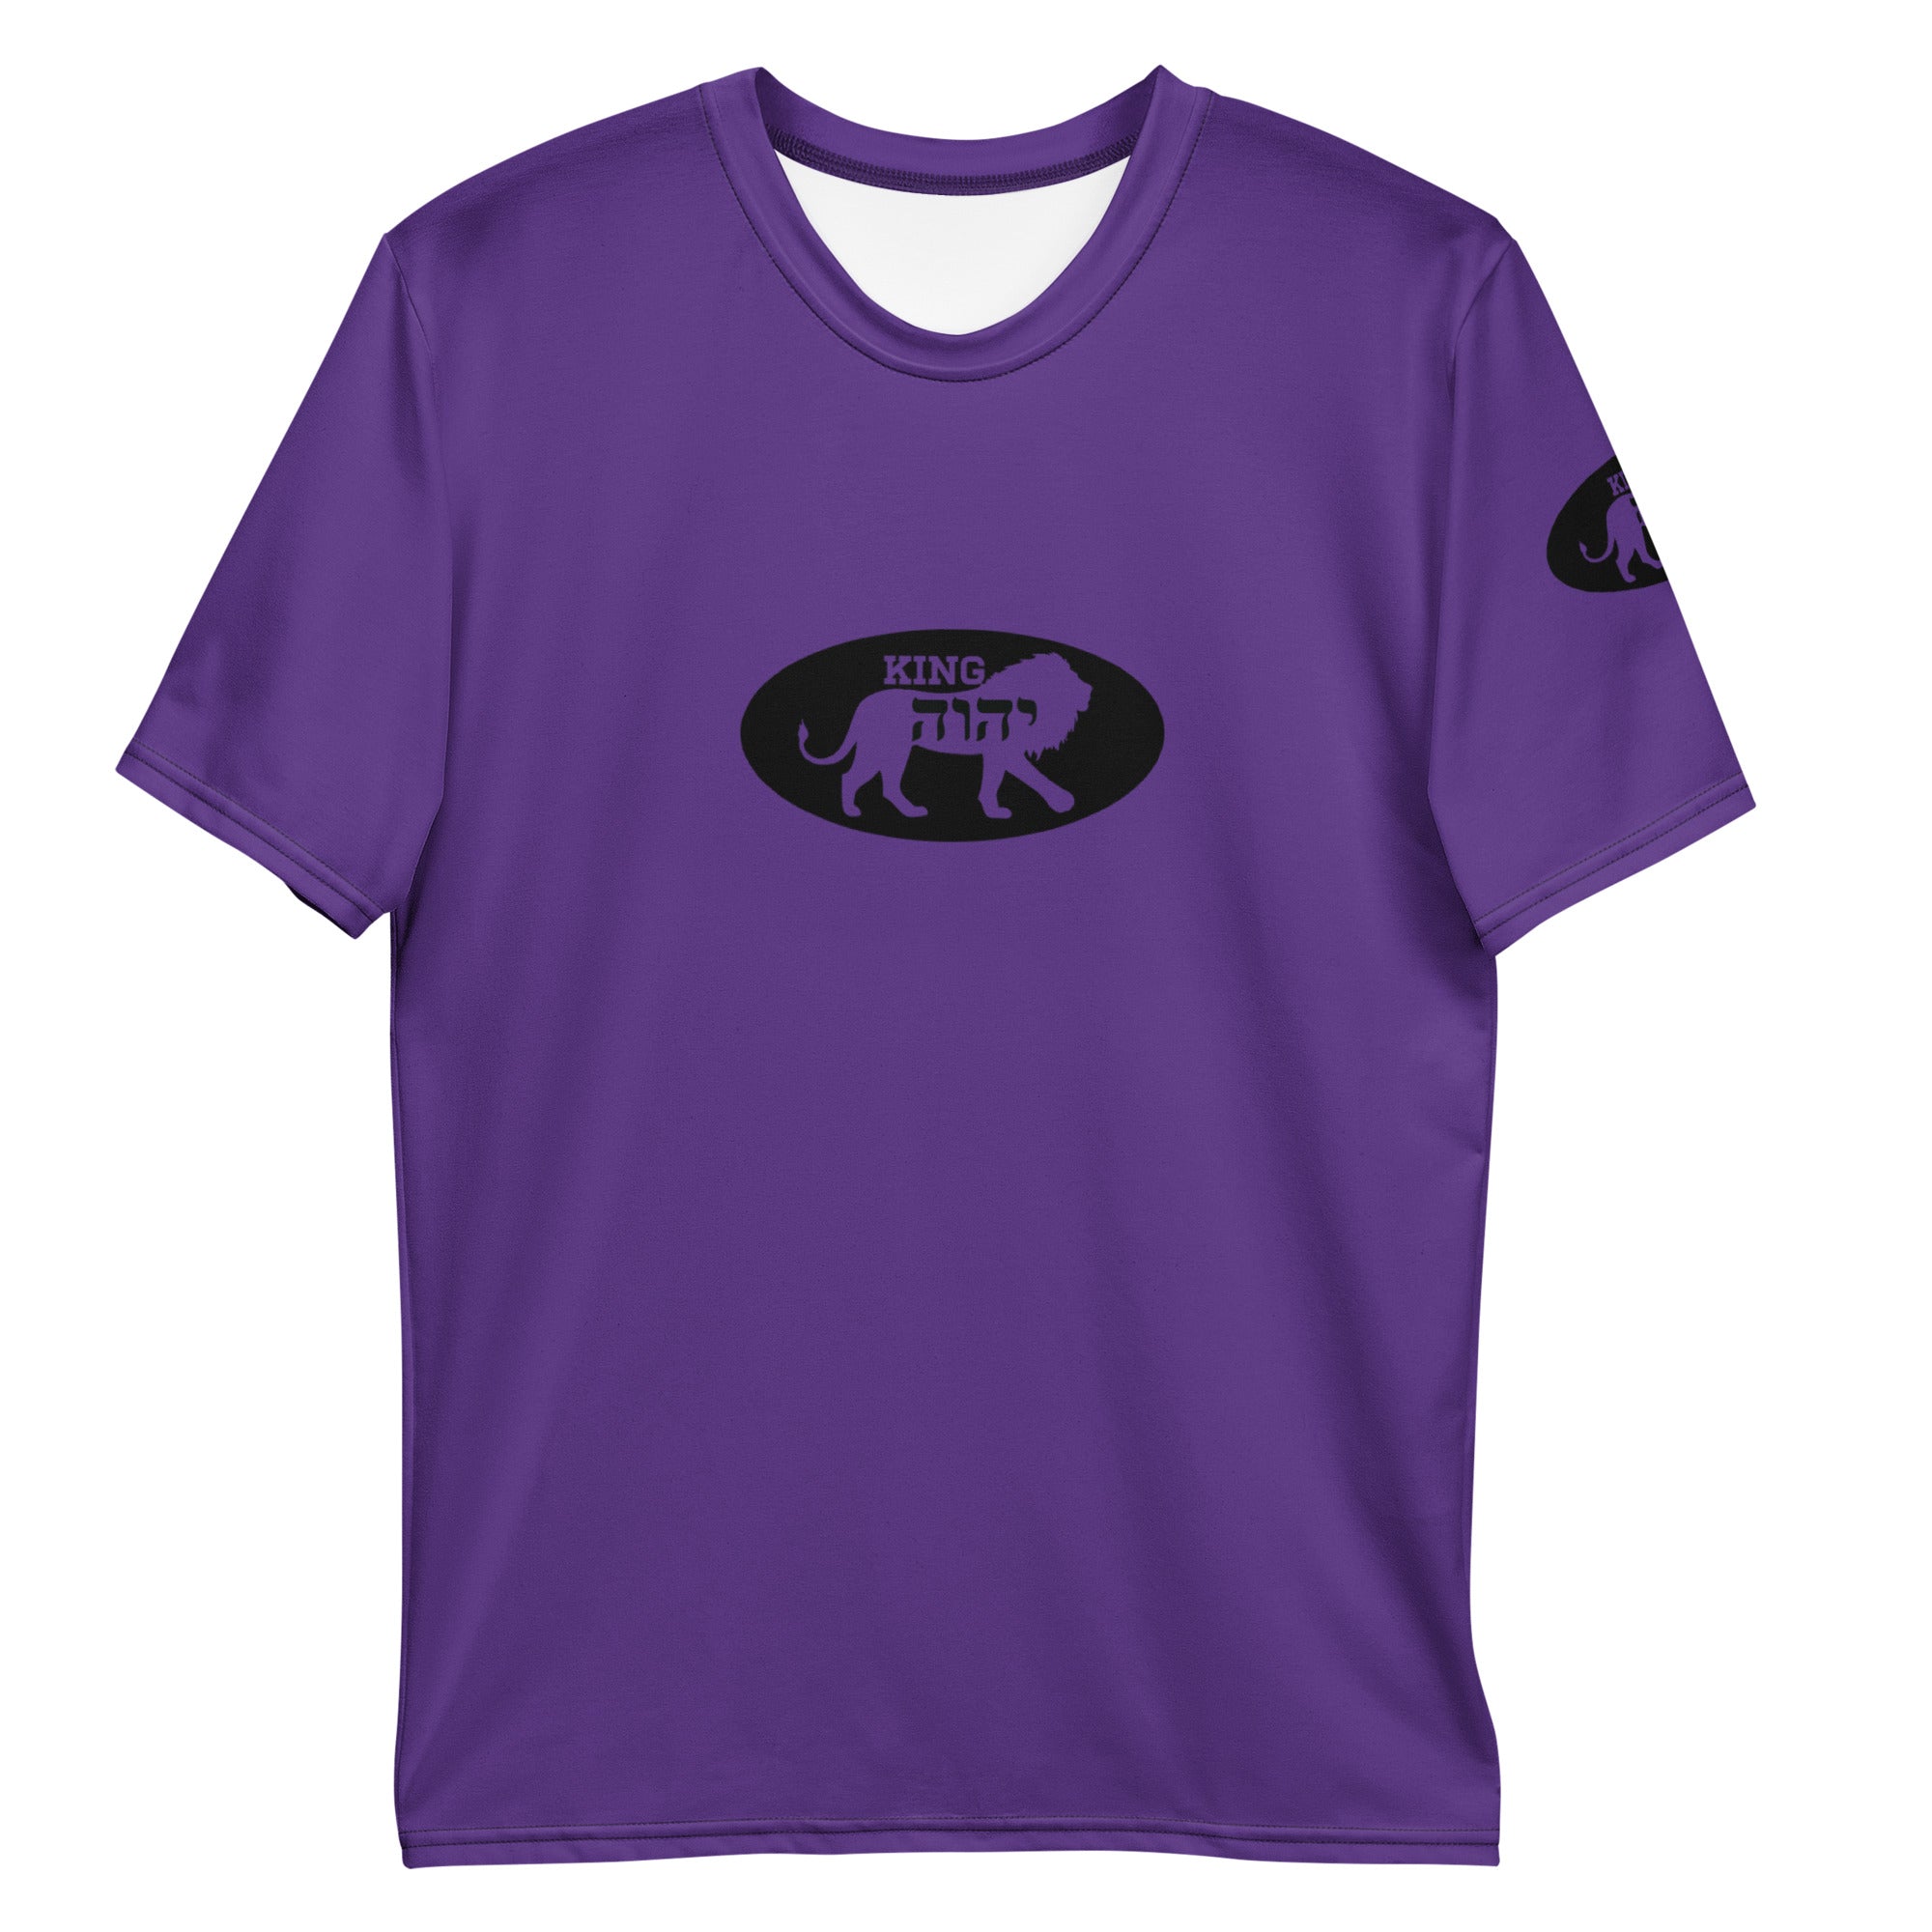 K.Y Unleashed Men's t-shirt (Purple)